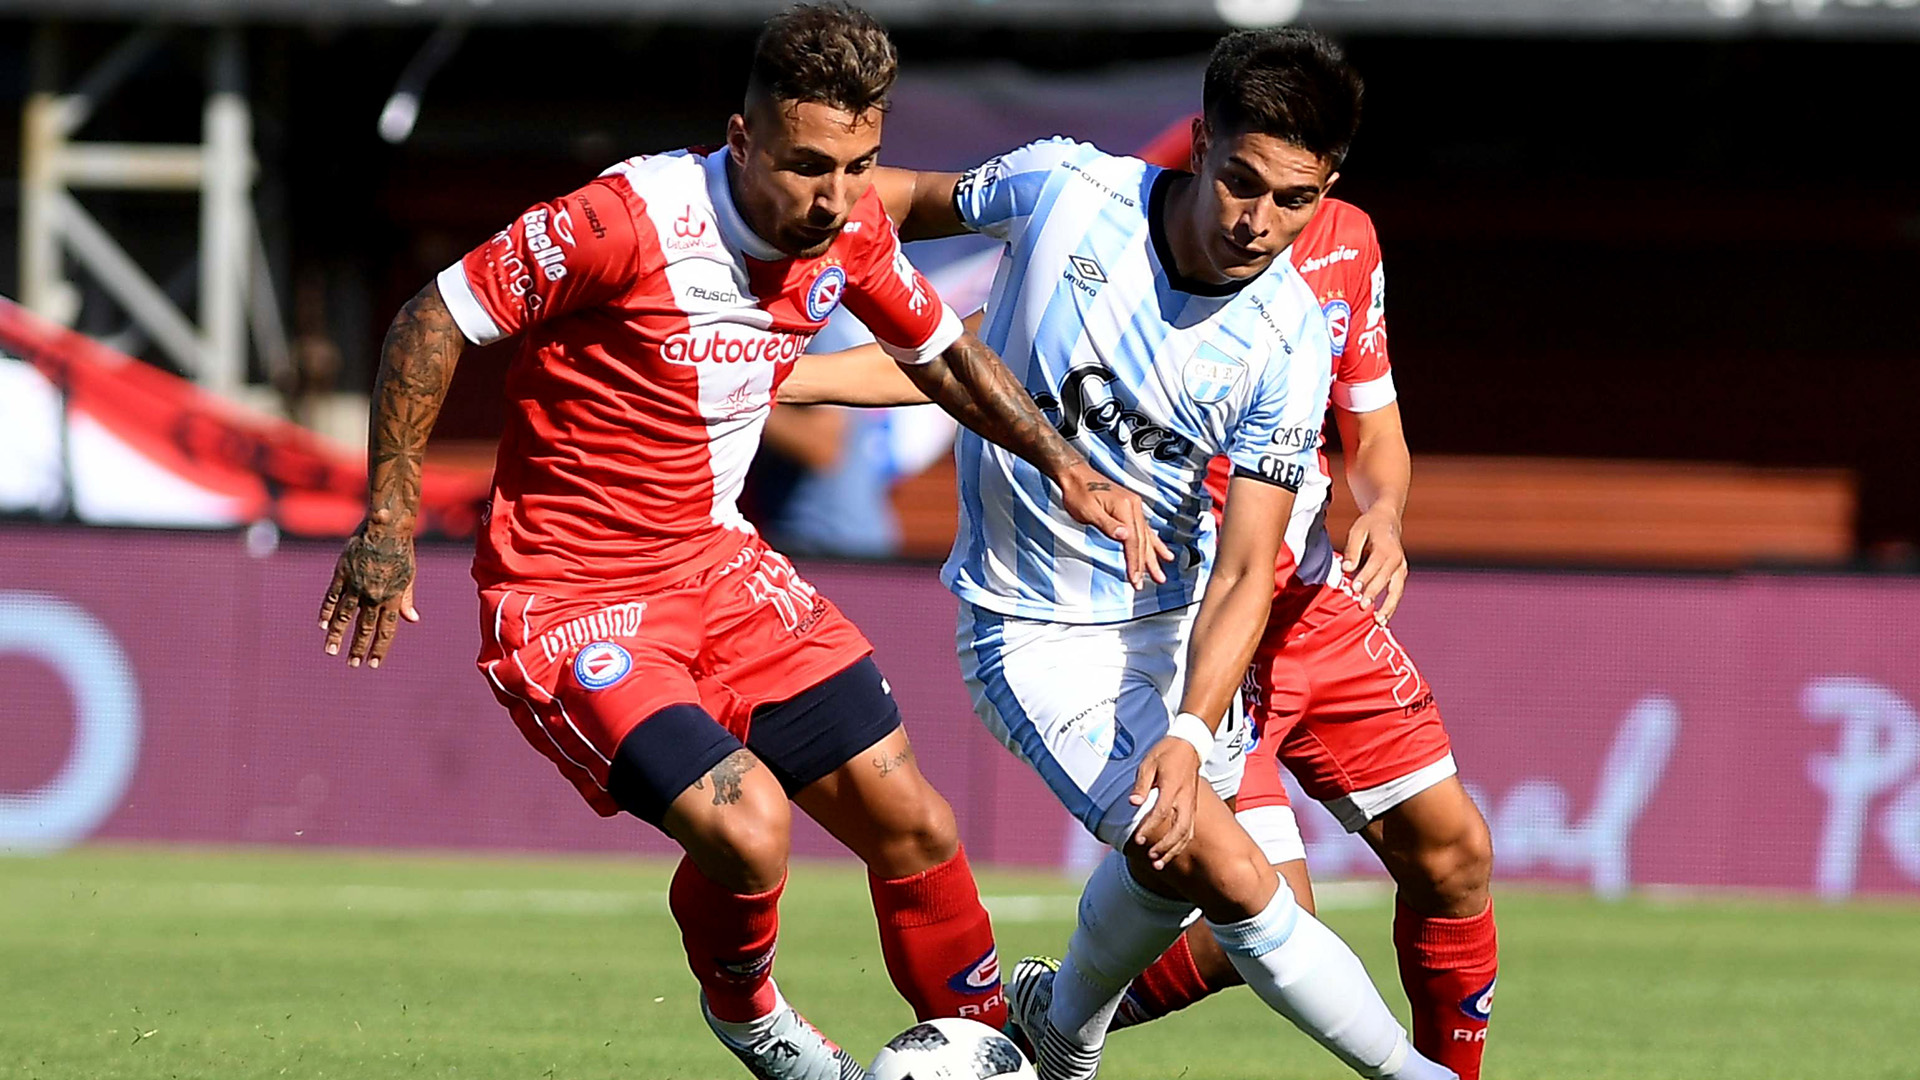 Atlético Tucumán visita La Paternal con la chance de quedar en la punta | Canal Showsport